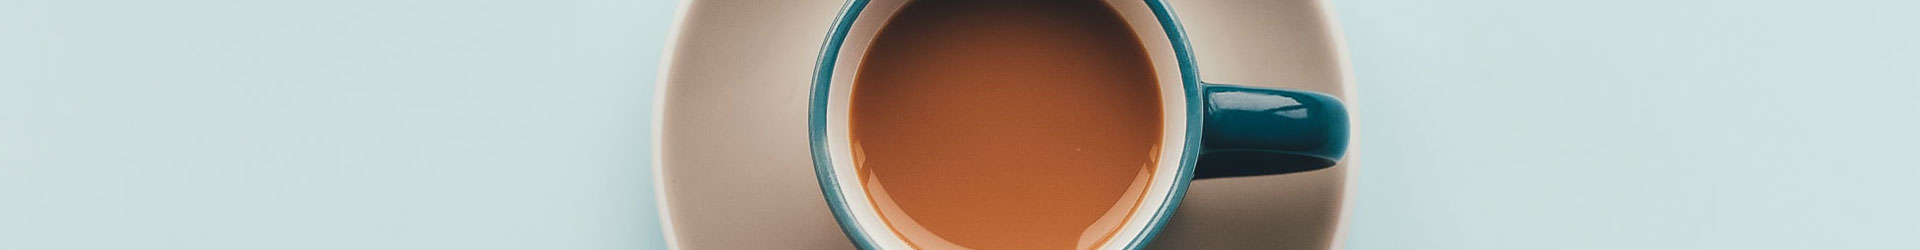 Espresso in blauer Kaffeetasse auf weißer Untertasse